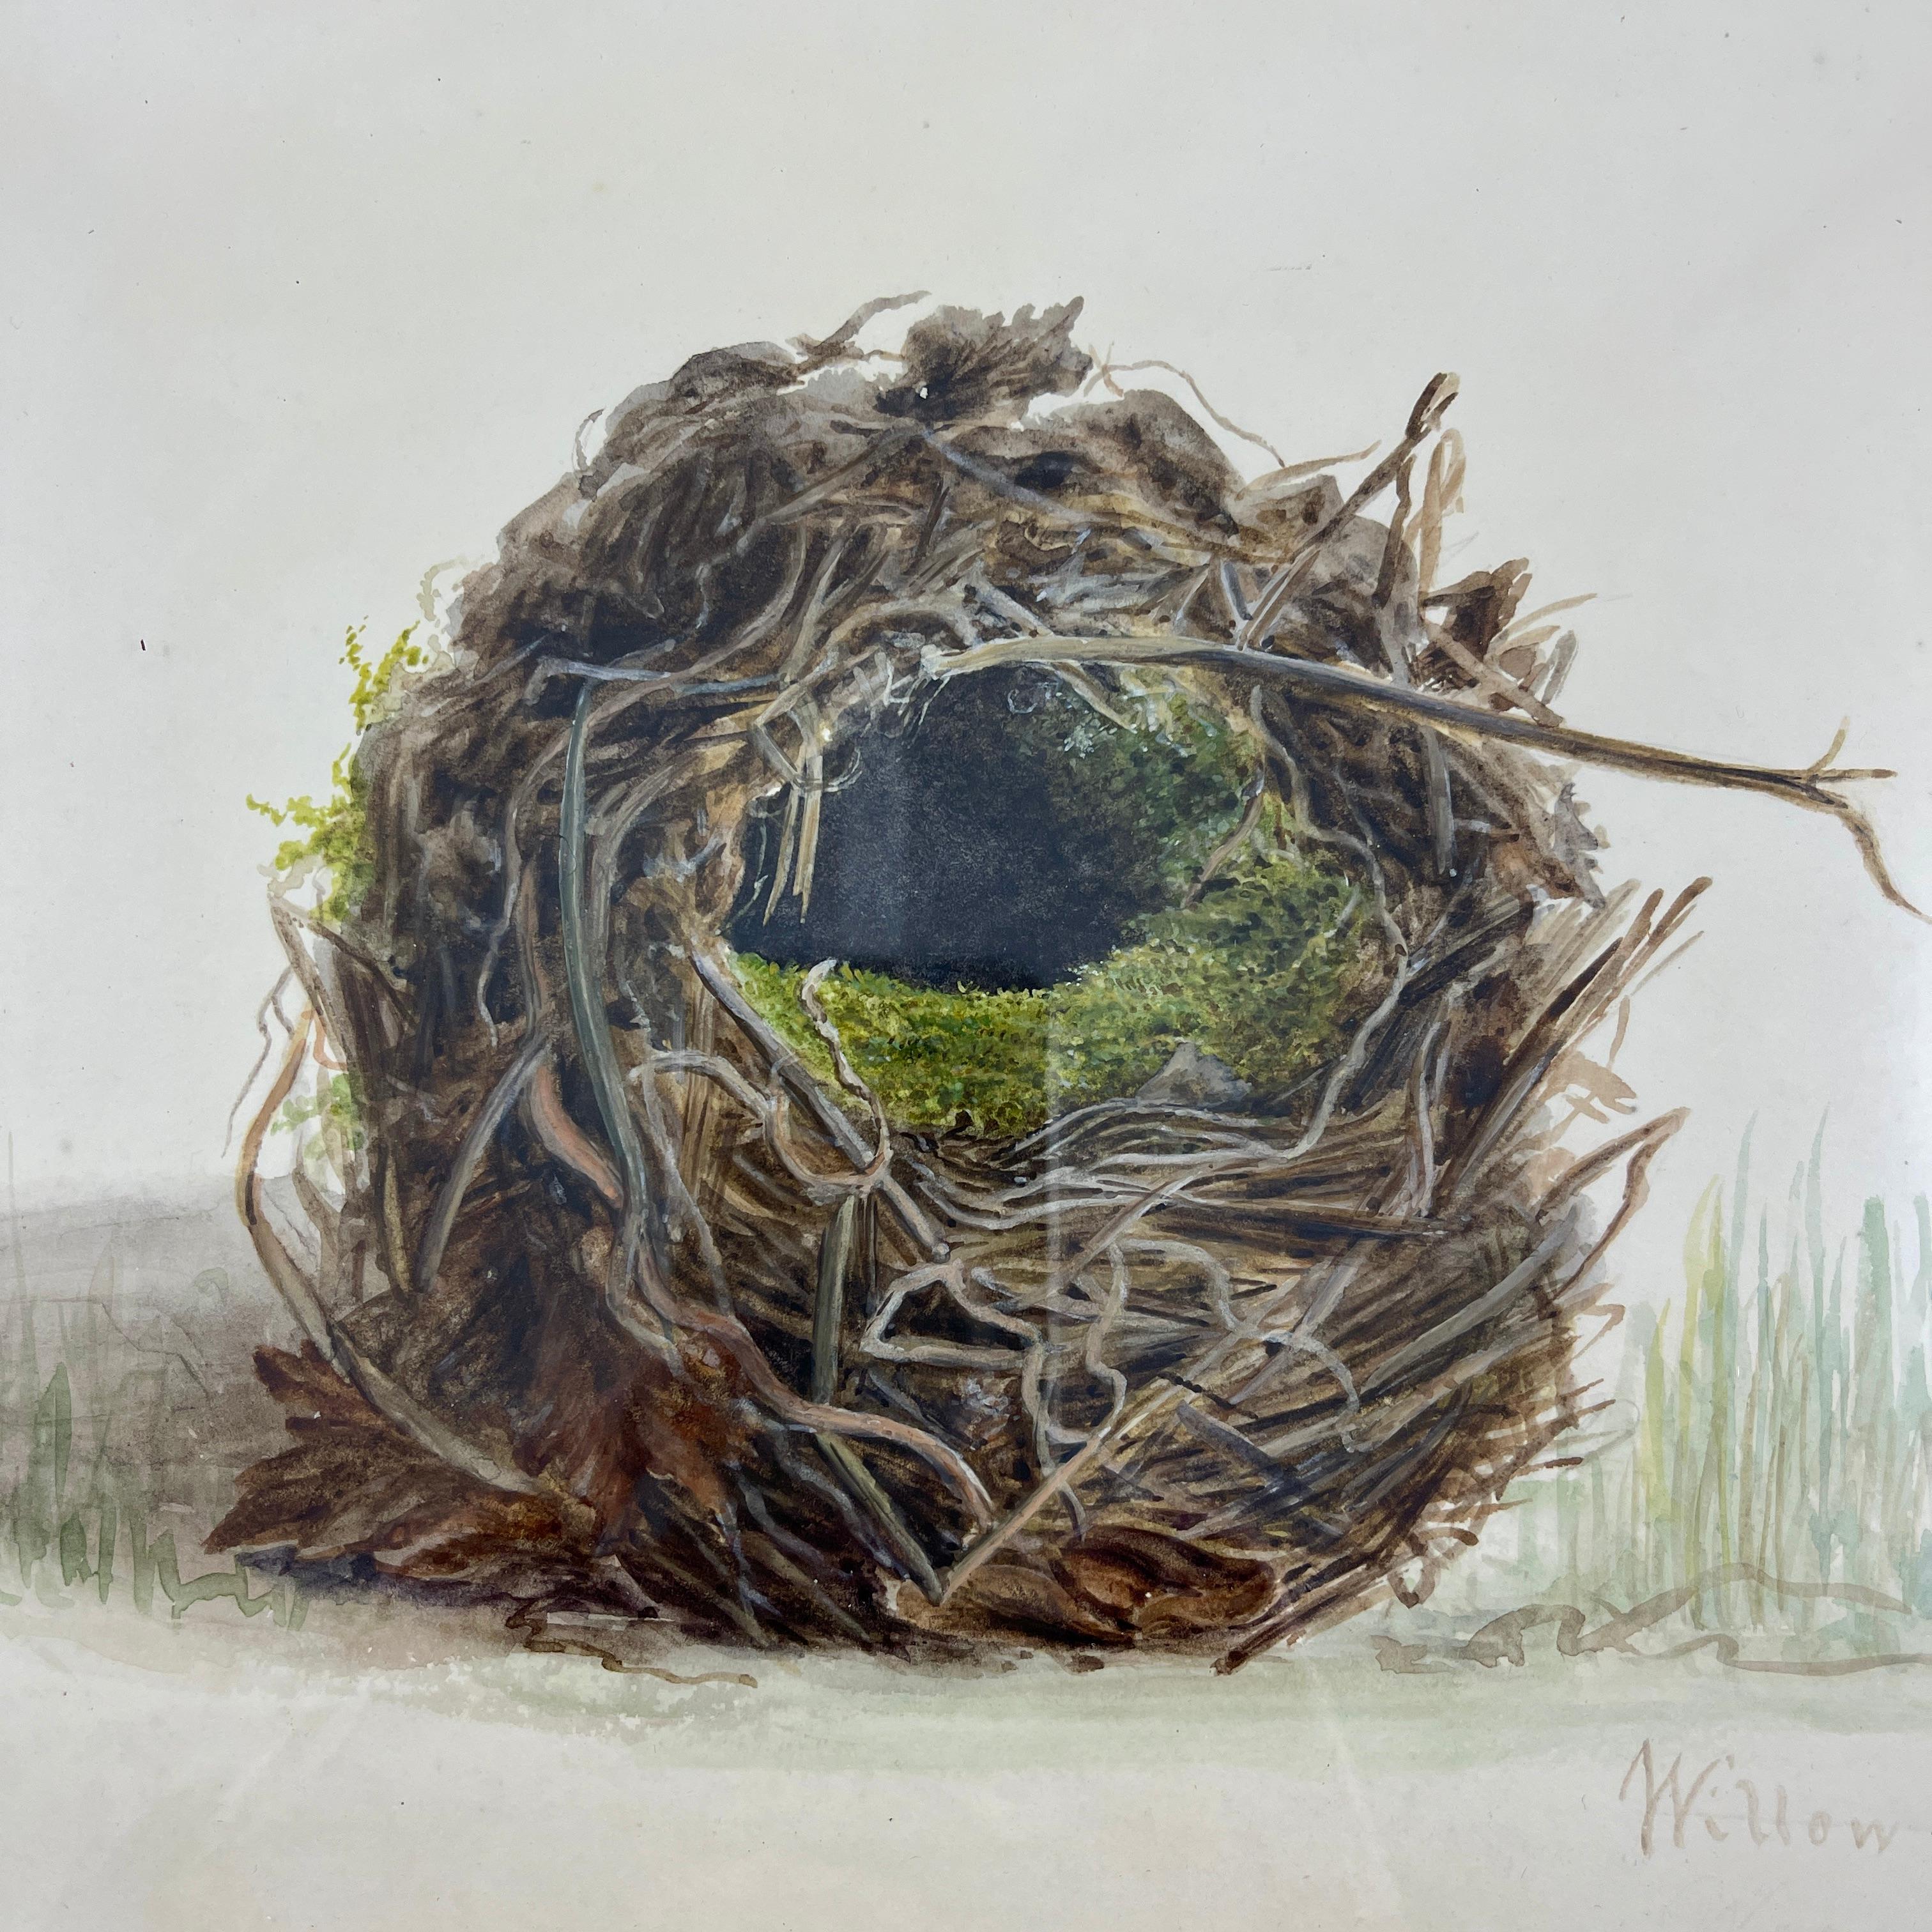 Ein Original-Aquarell der Britischen Schule aus der Regency-Periode, das ein Nest und ein Ei eines Zaunkönigs zeigt, montiert in einem Rahmen aus Obstholz aus der georgischen Periode - datiert 1863.

Diese Aquarelle wurden hauptsächlich von jungen